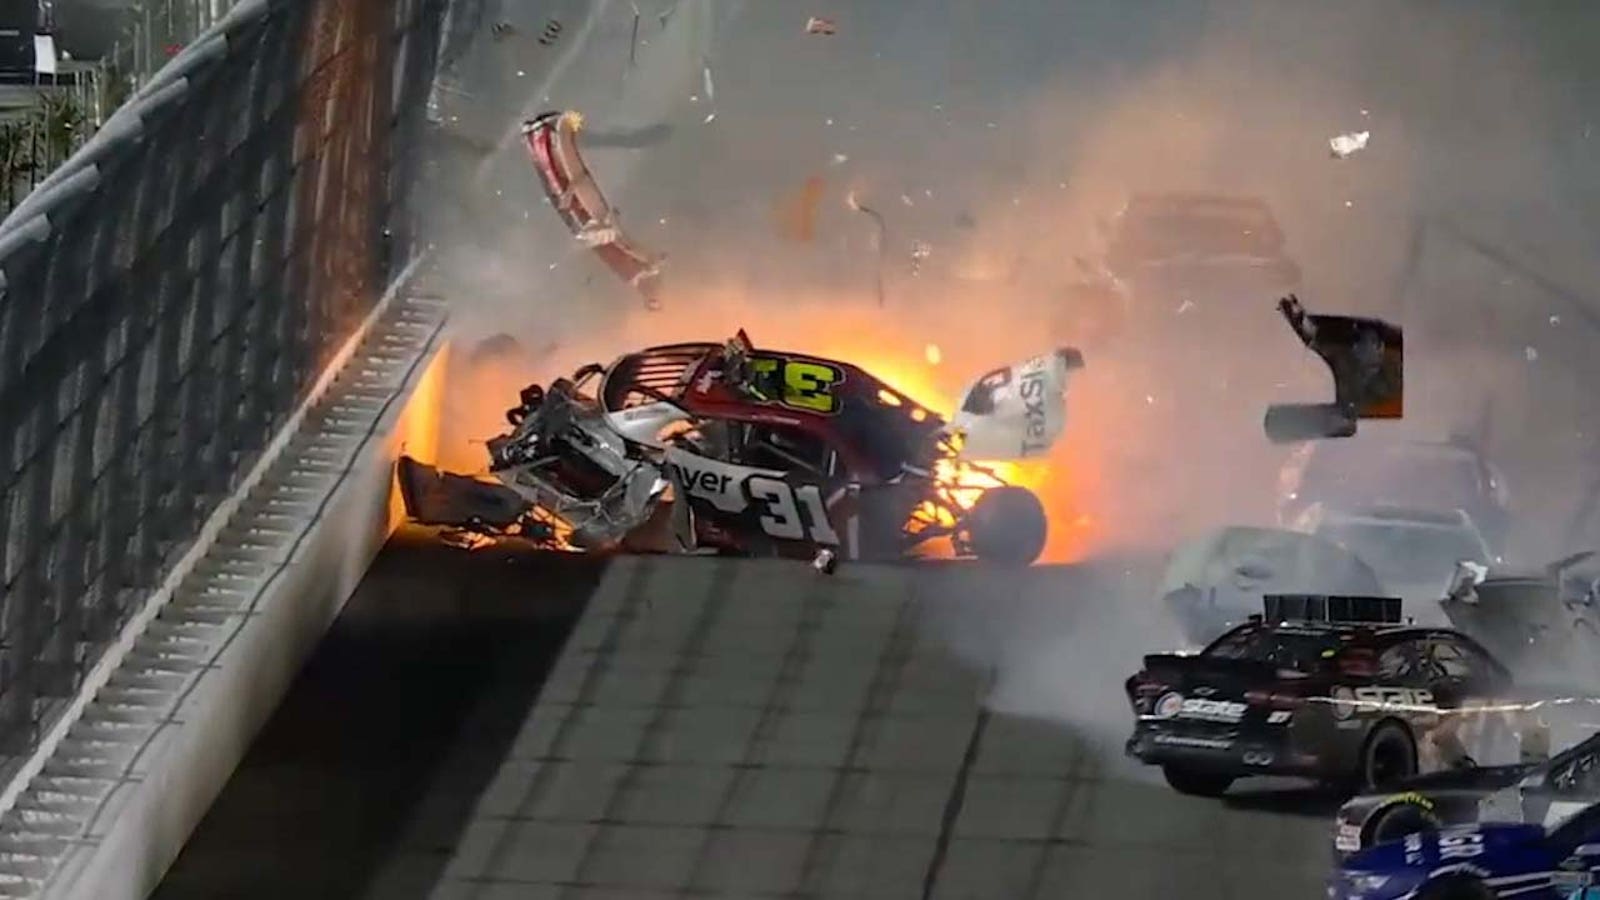 Myatt Snider crashes on the last lap at Daytona